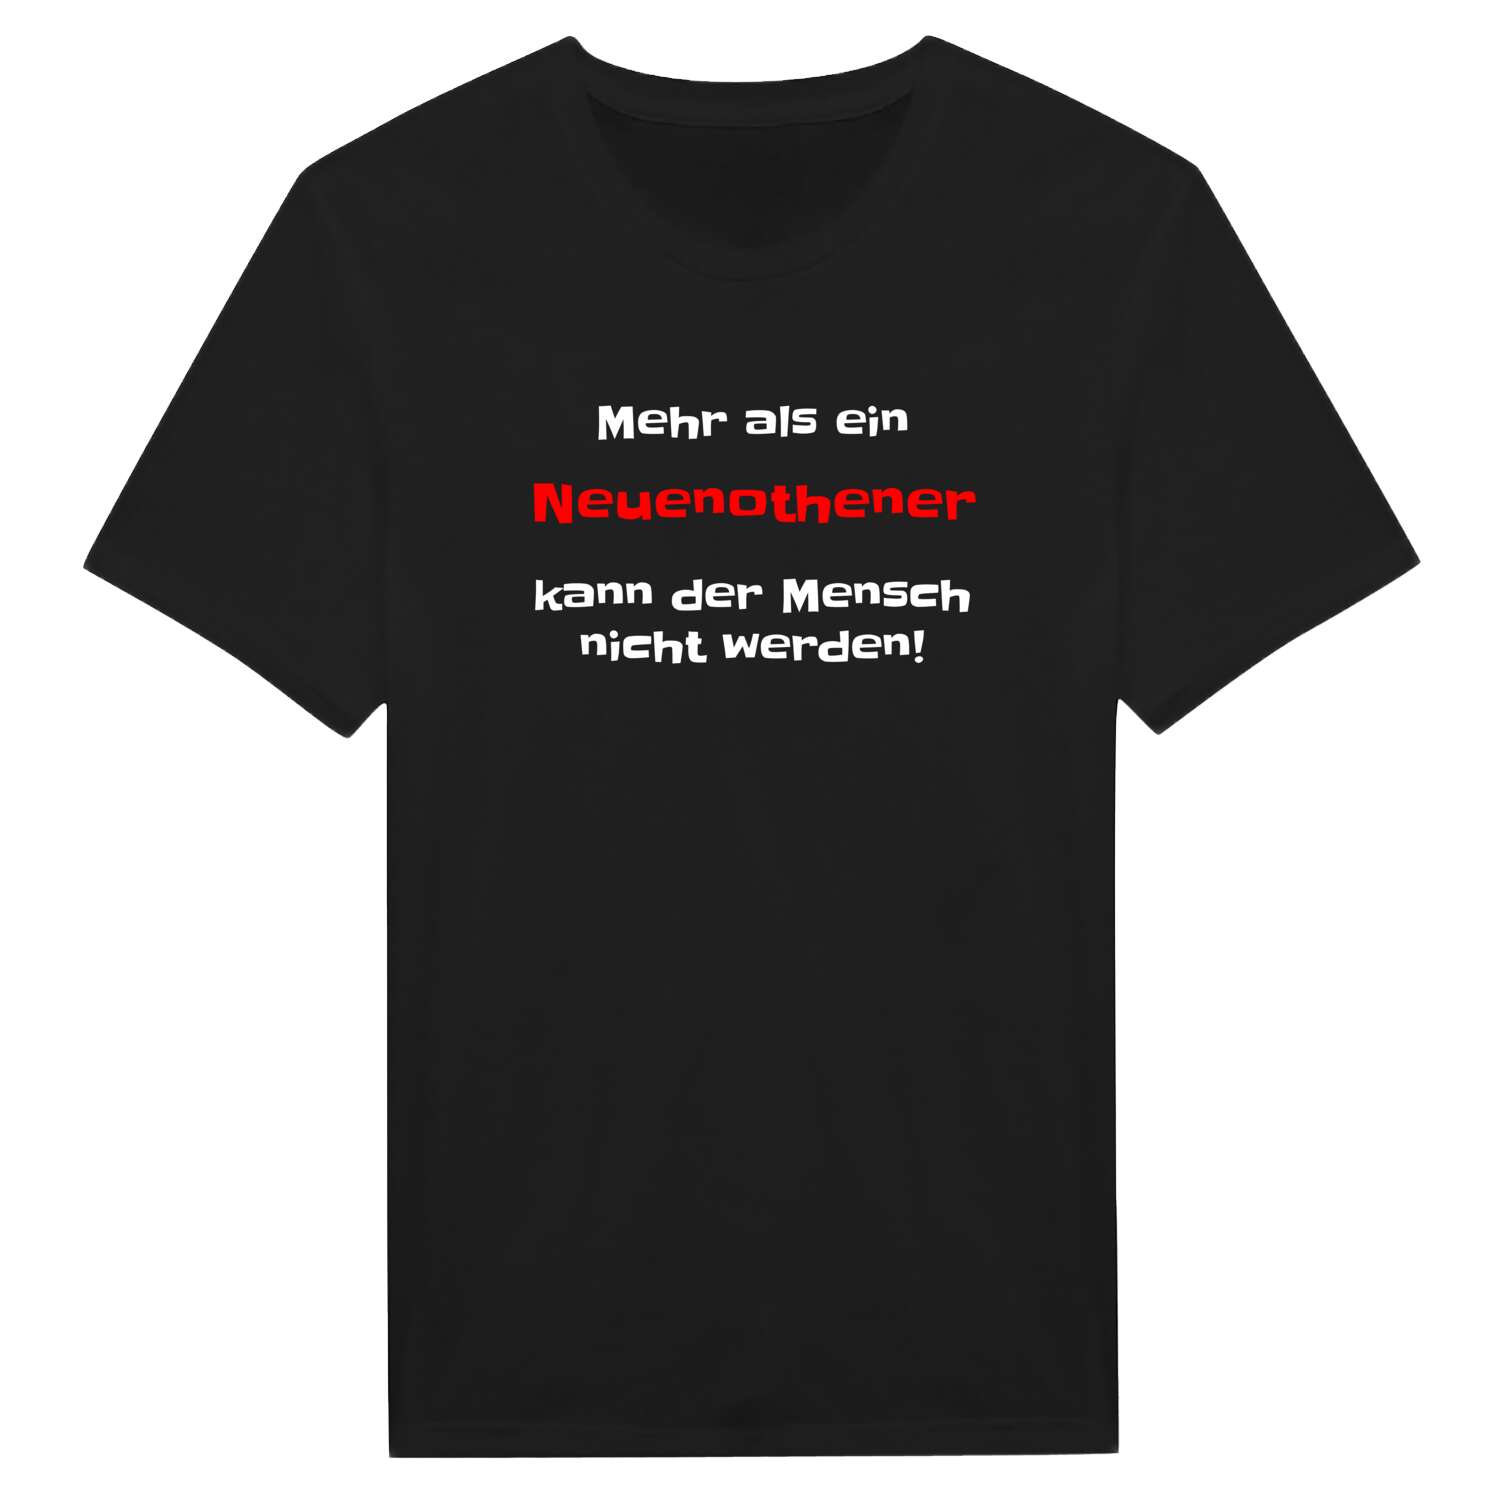 Neuenothe T-Shirt »Mehr als ein«